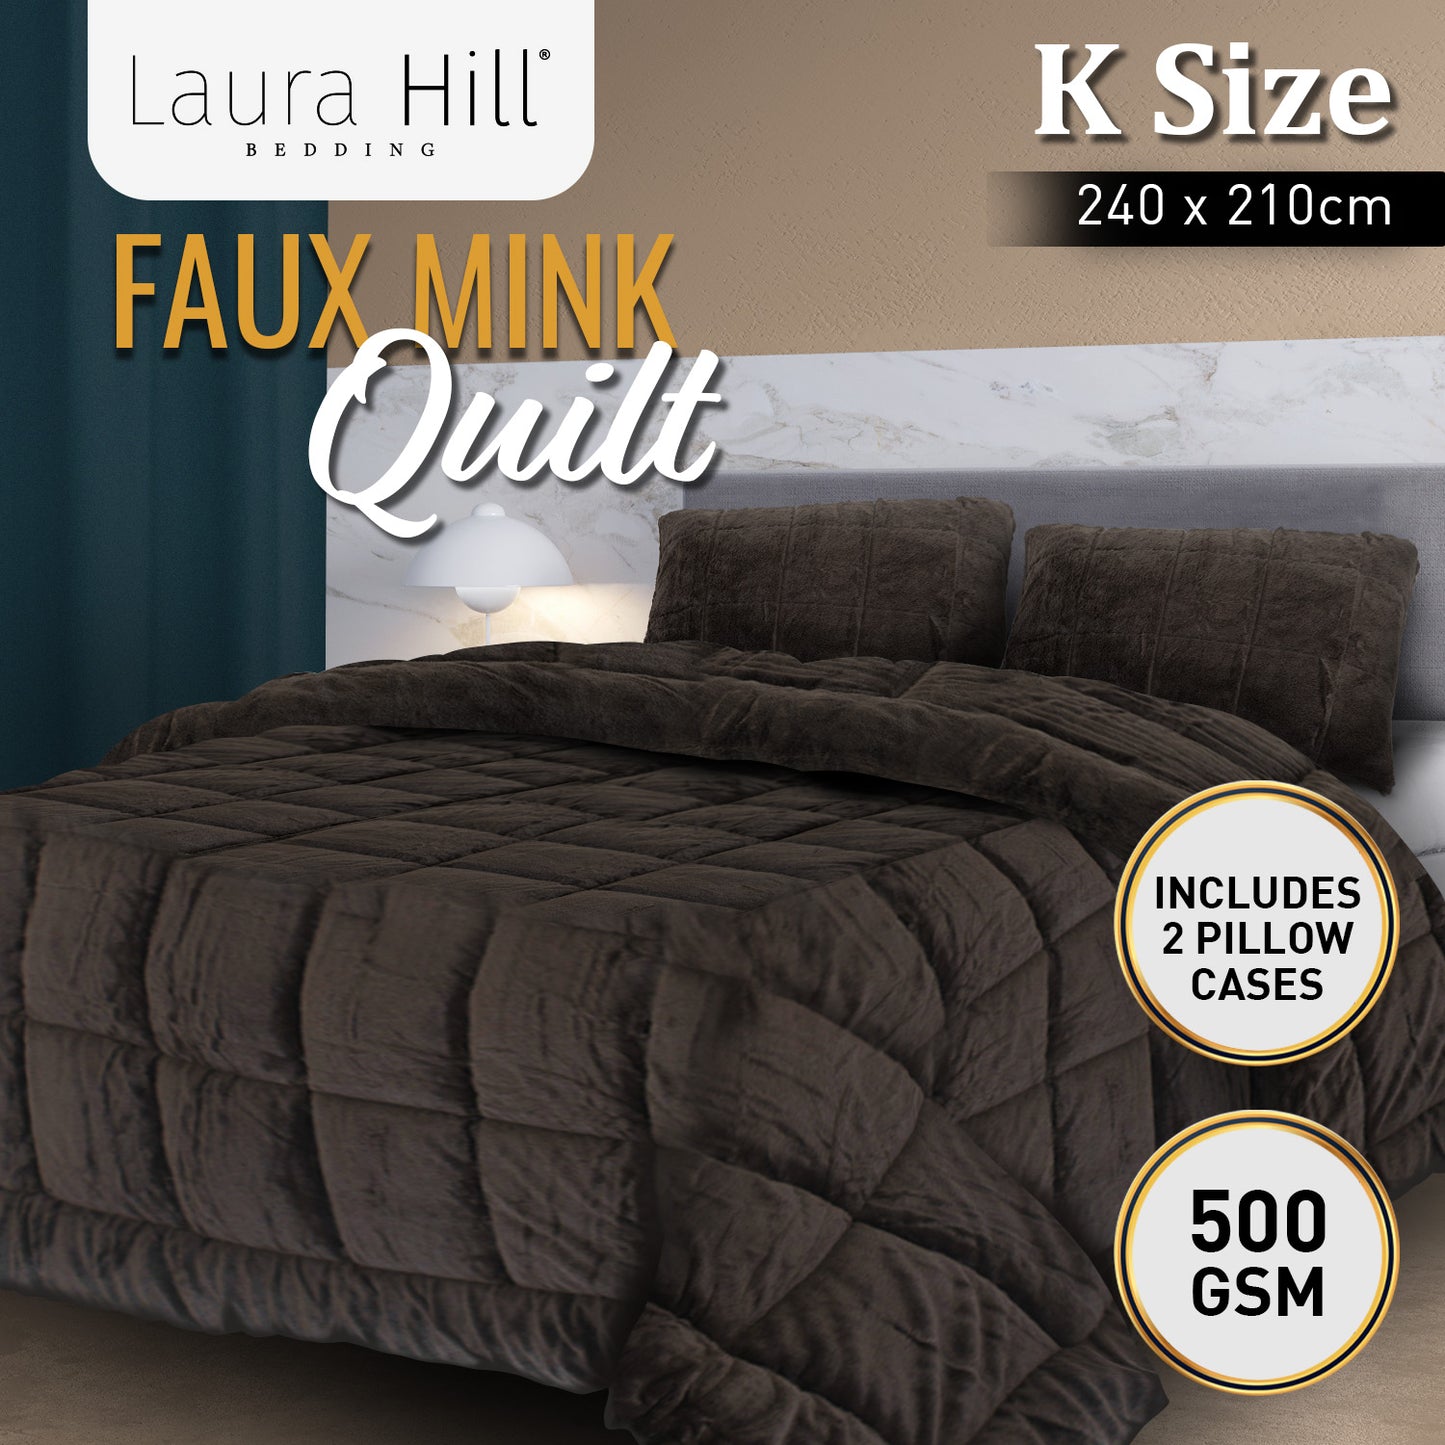 Laura Hill 500GSM Faux Mink Quilt Comforter Doona - King